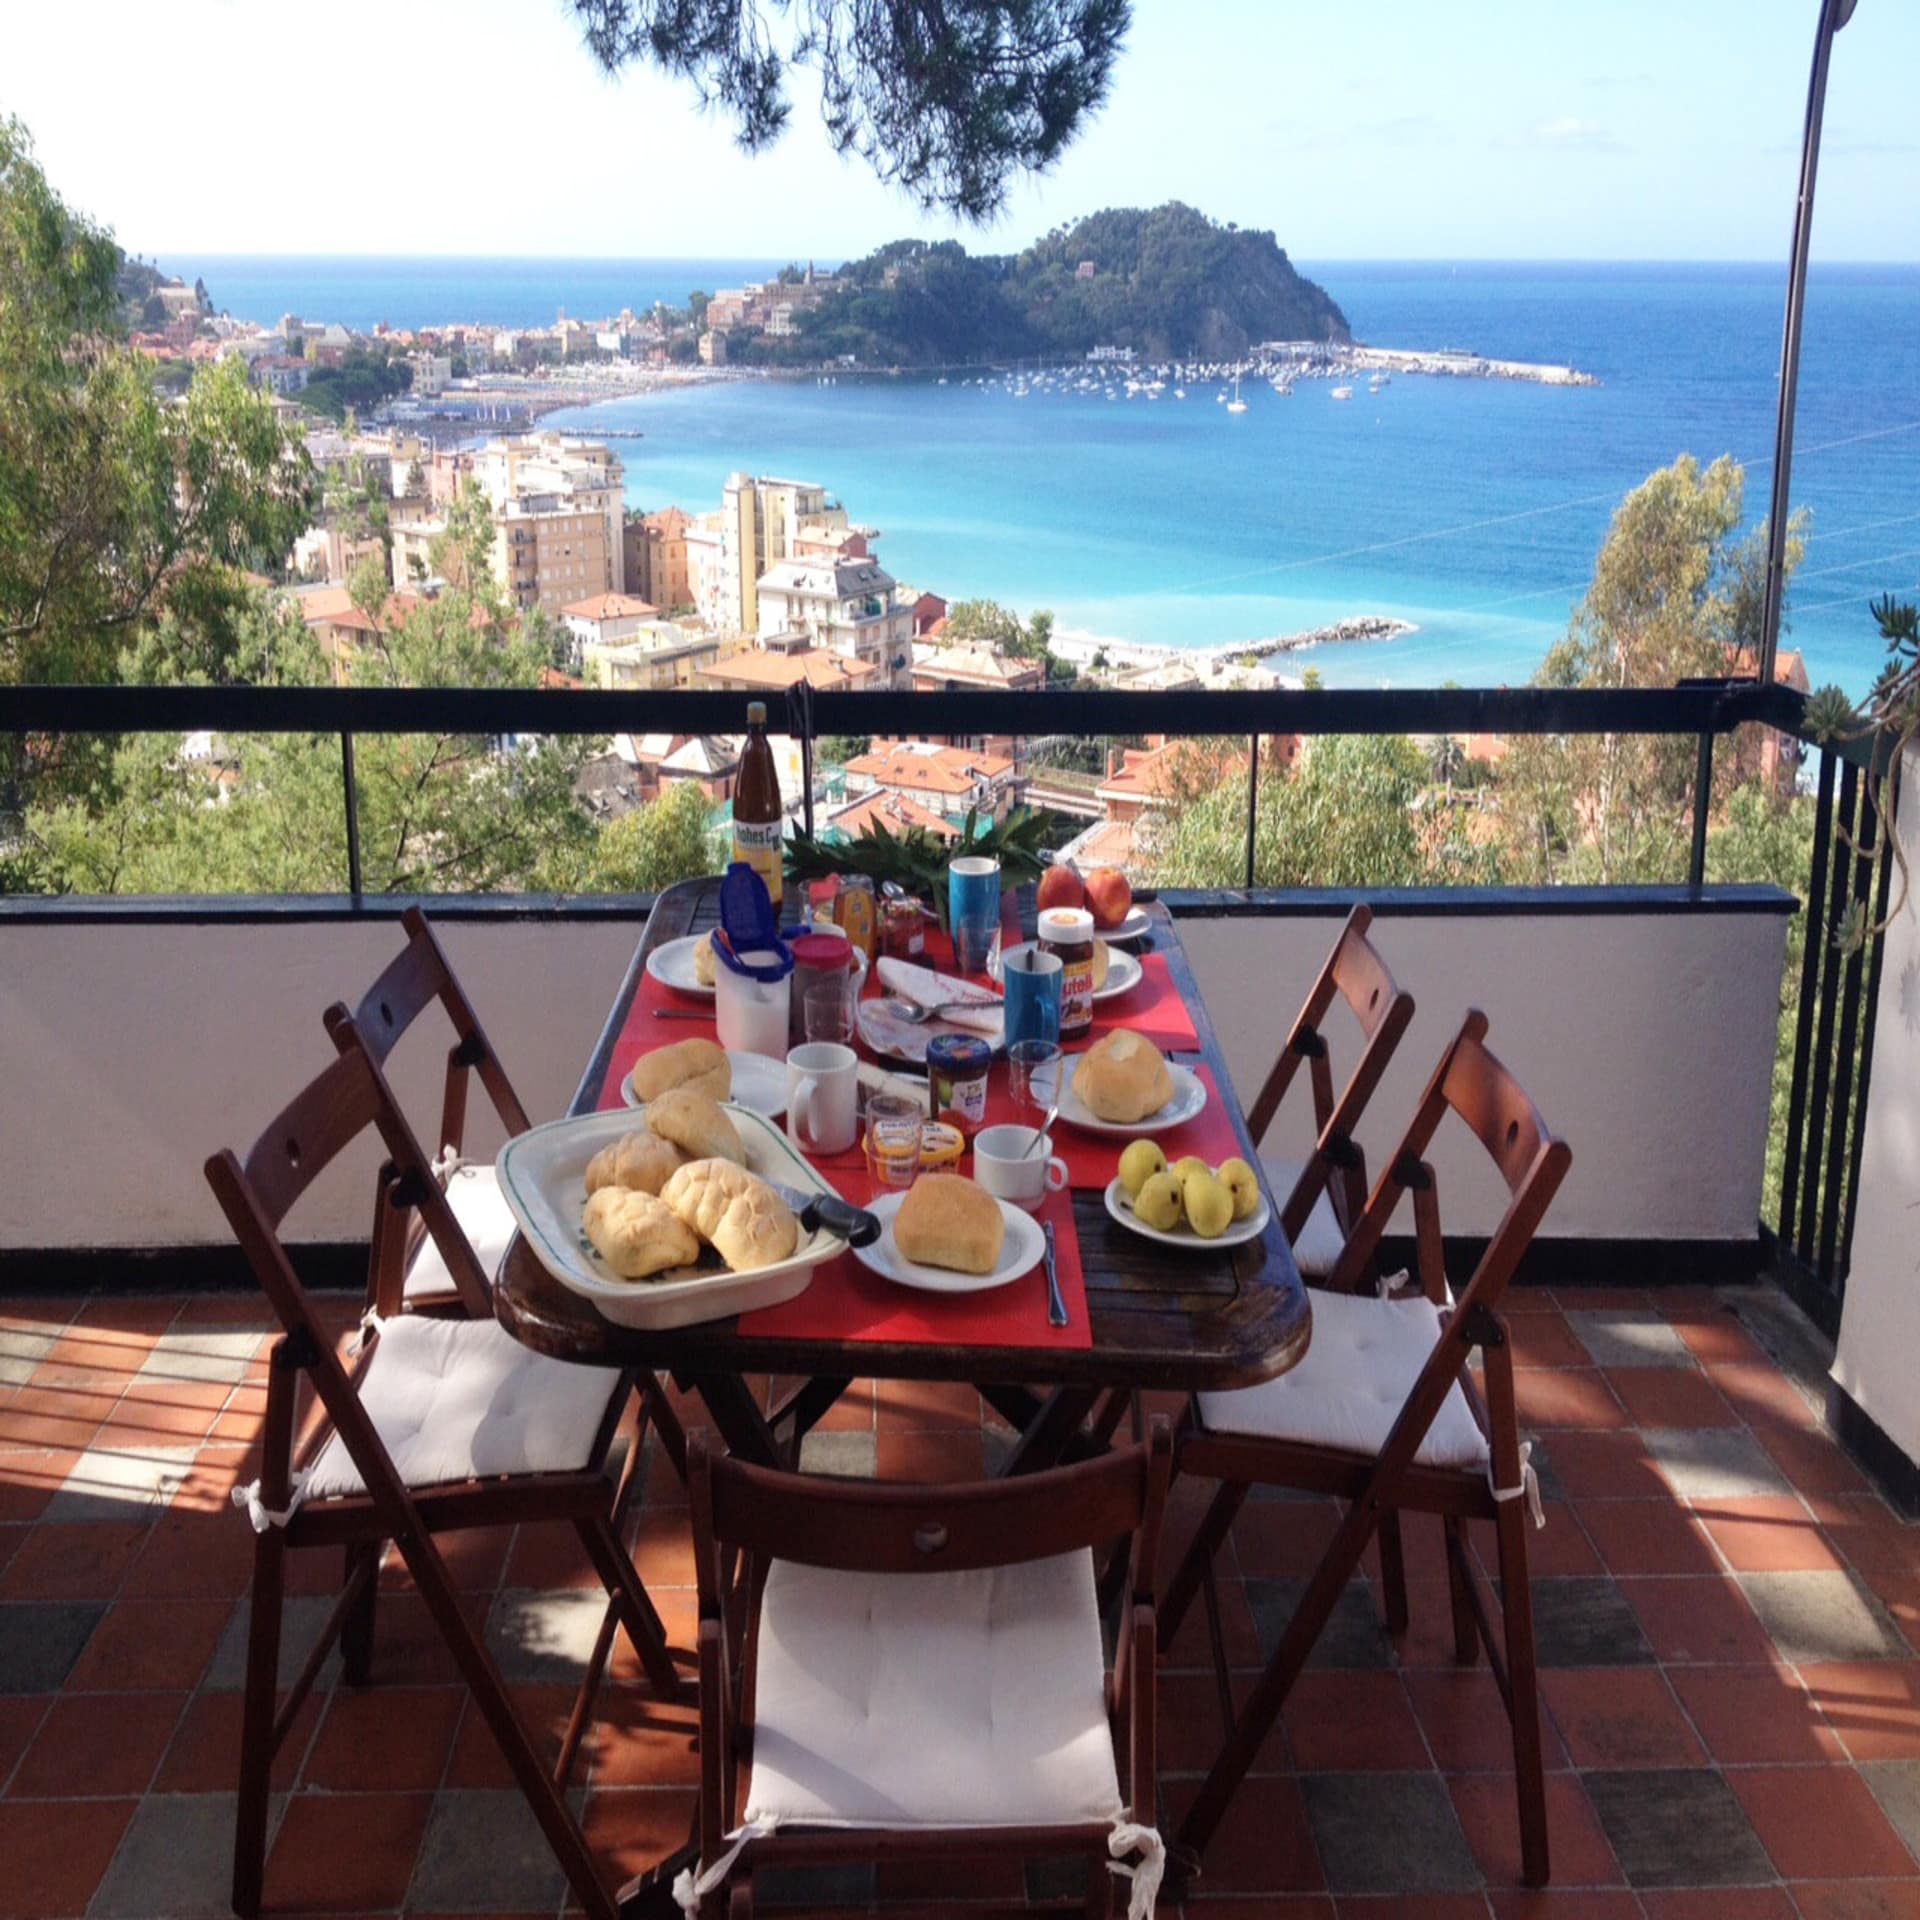 Terrasse mit gedecktem Frühstückstisch für 5 Personen und Blick auf einen Ort und eine Bucht.